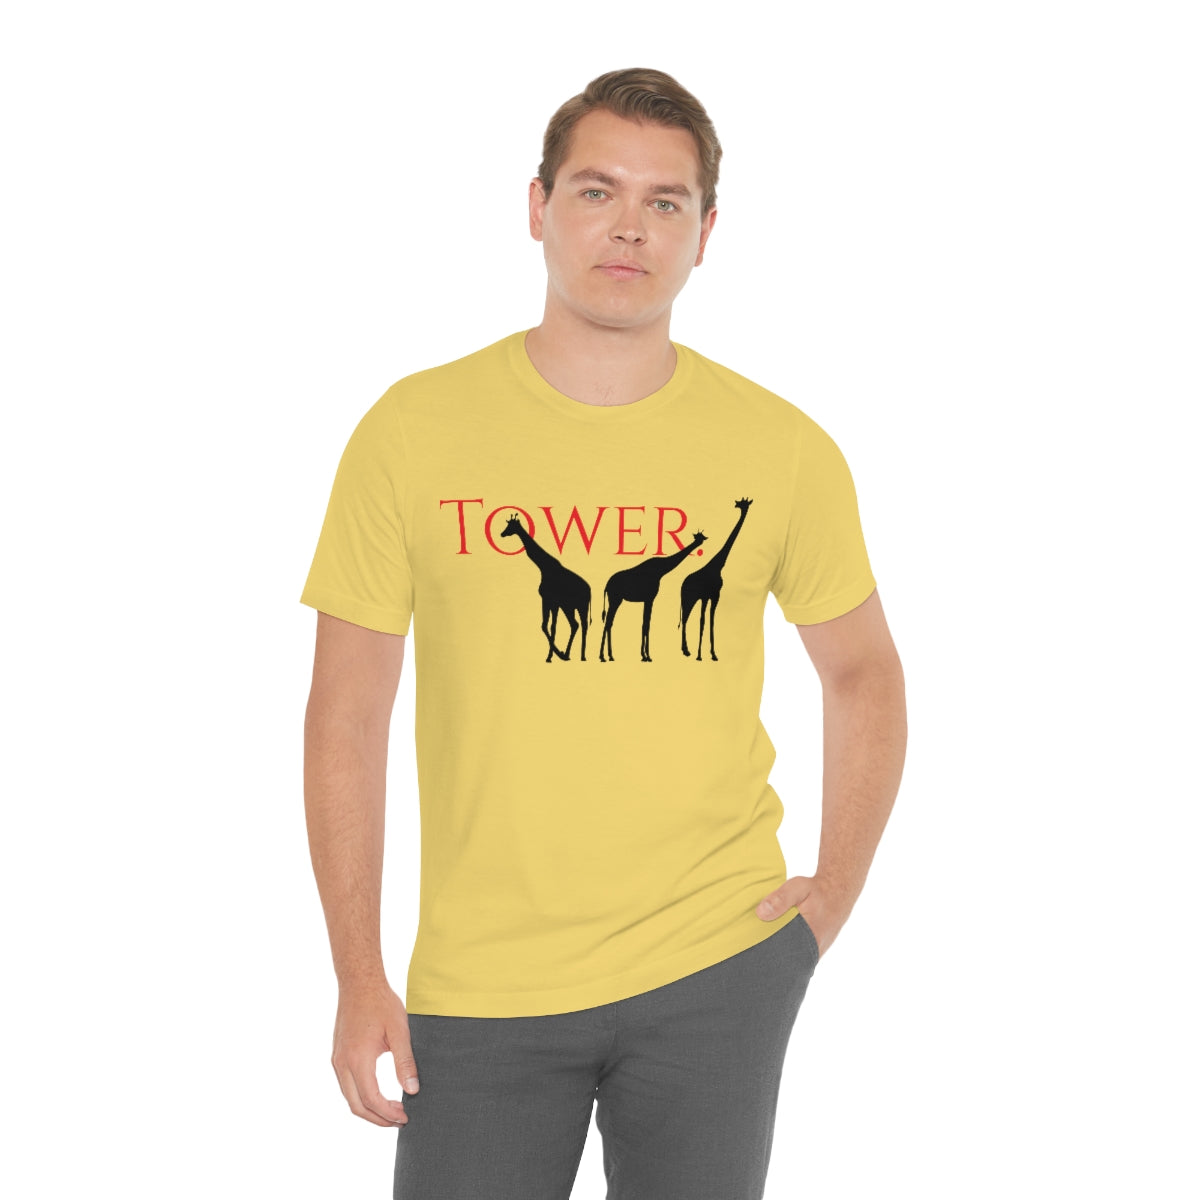 Tower of Giraffe T-shirt